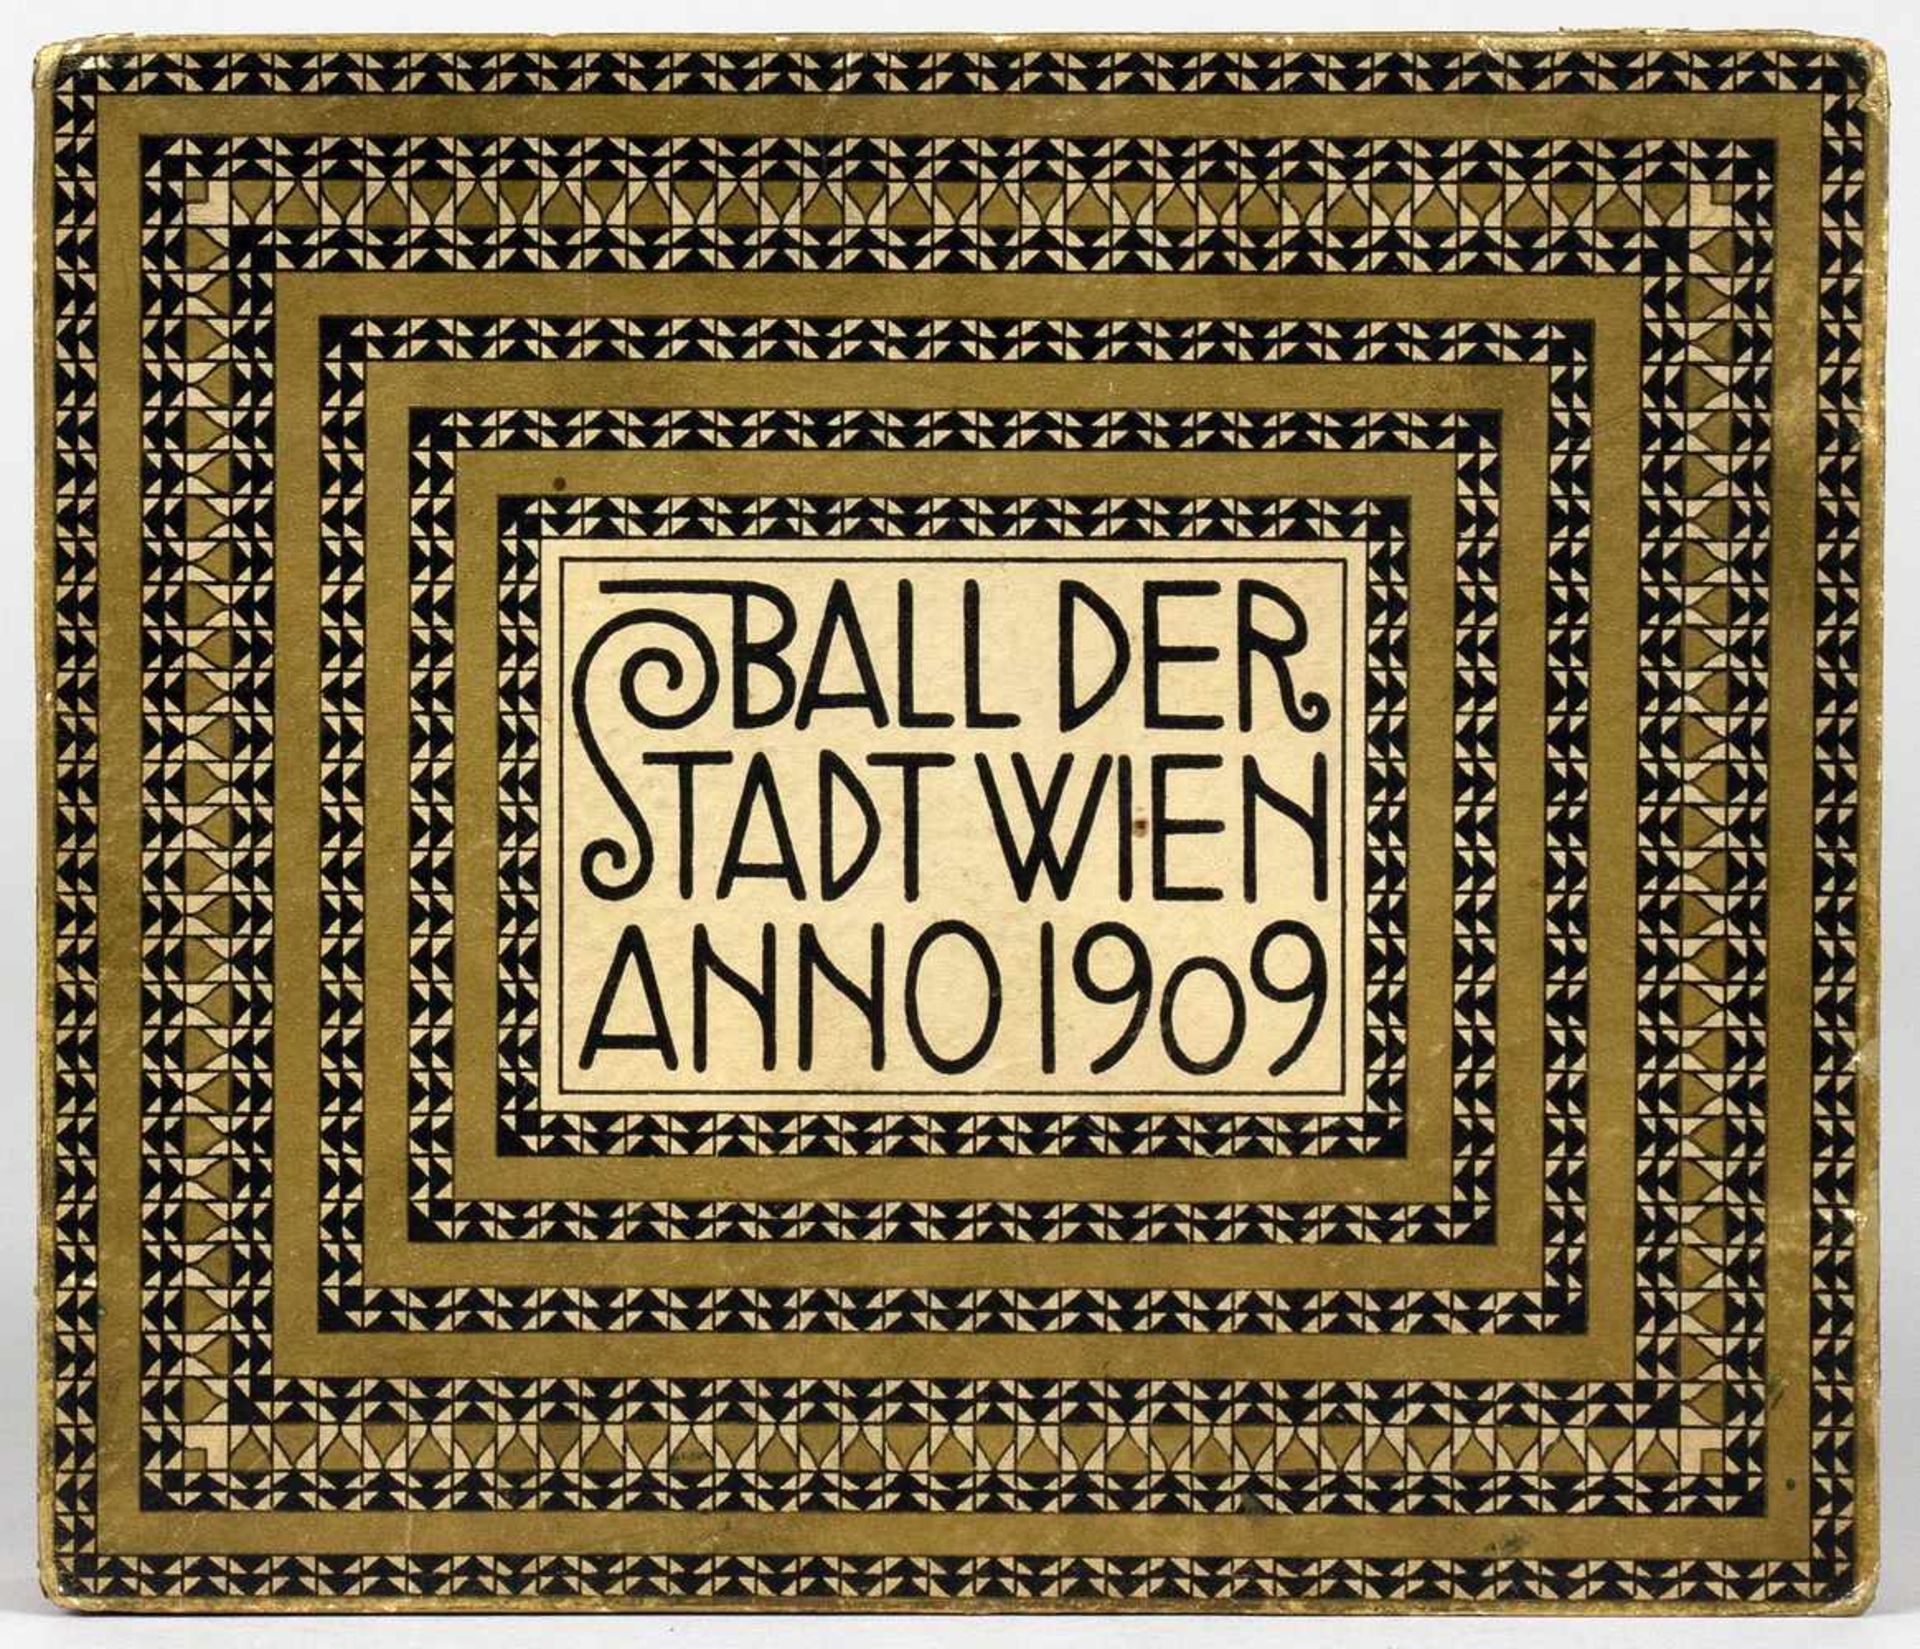 Wiener Ballspenden - Ball der Stadt Wien 1909. Gedenktage aus dem Jahre 1909. Eine Erinnerung. Den - Bild 2 aus 4